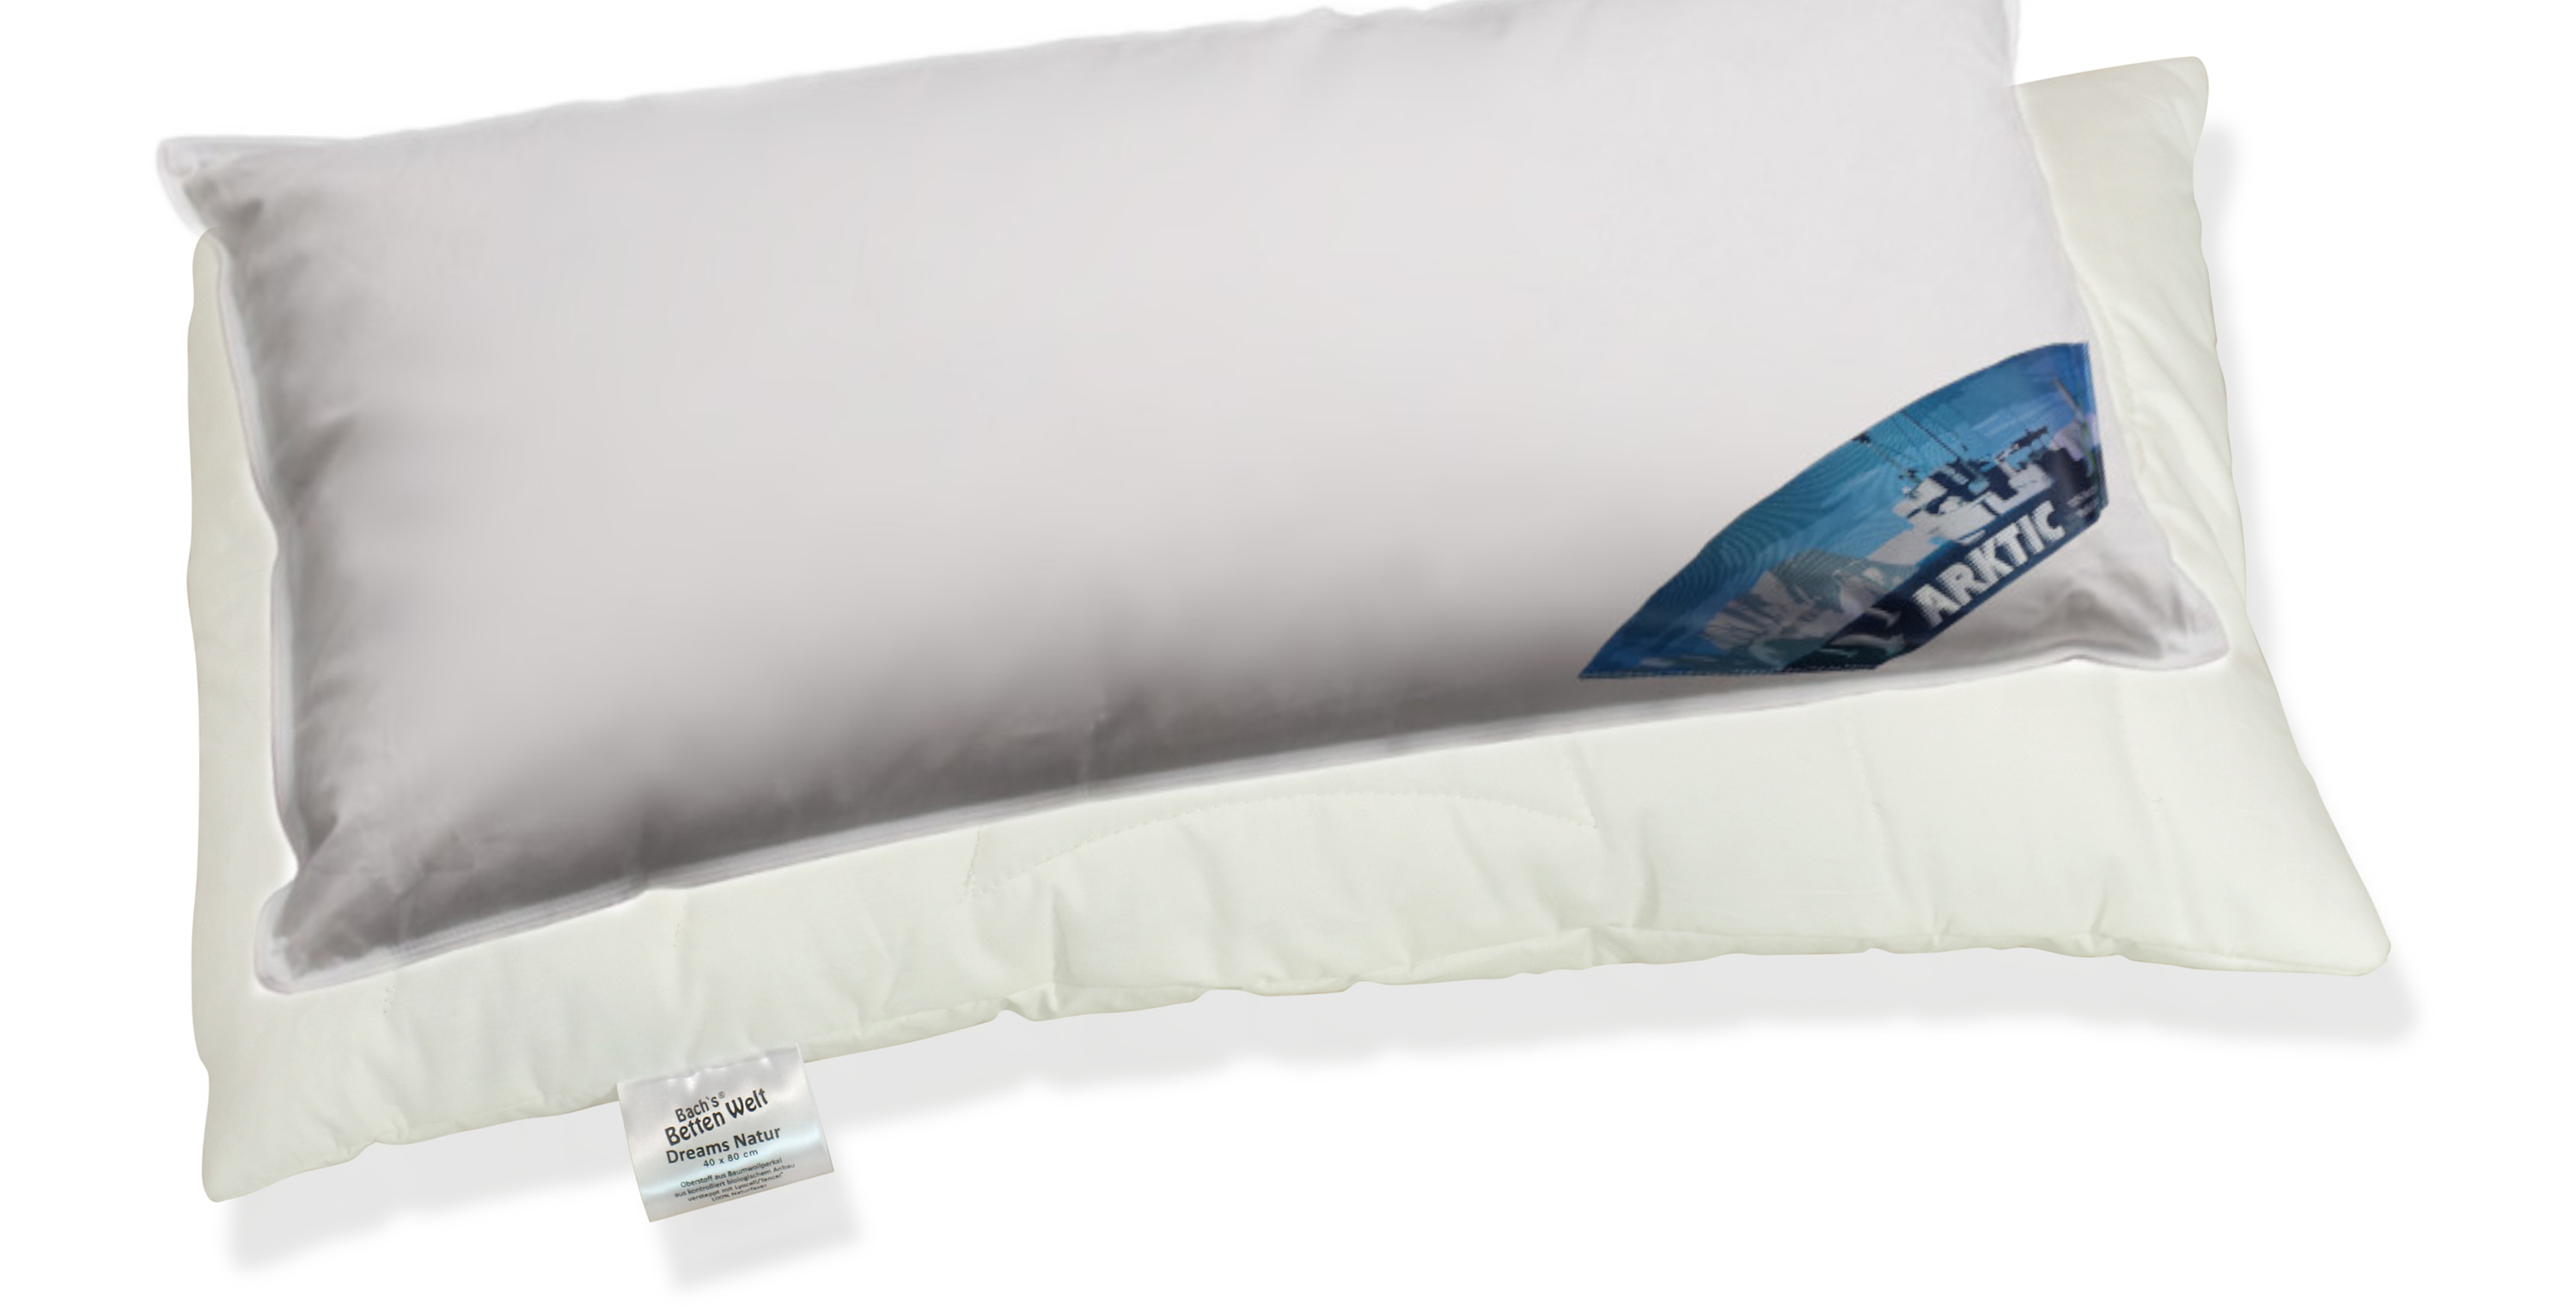 Neuheit Feder-Daunenkissen mit Schonbezug Arktic Kissen Dreams LT Natur extra Komfort 40x80 cm